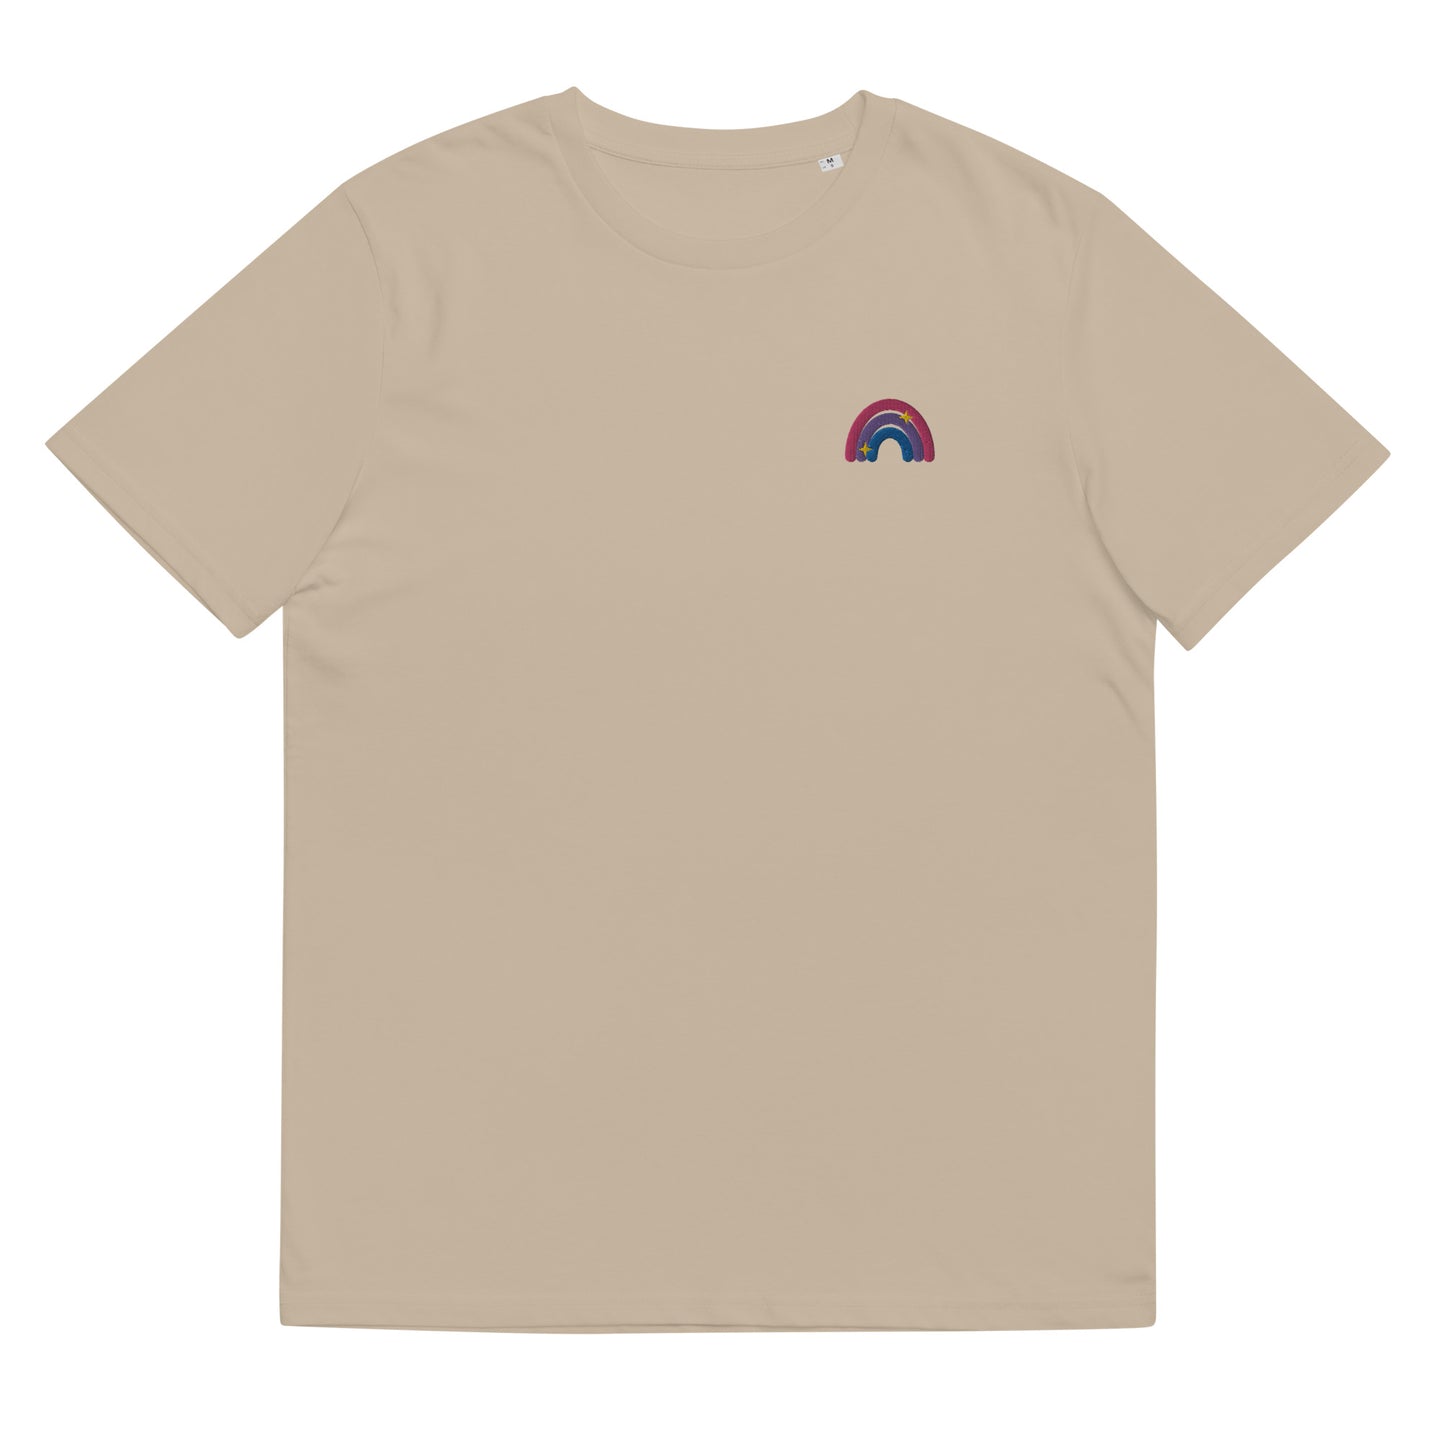 T-shirt en coton bio : broderie arc-en-ciel bisexuelle